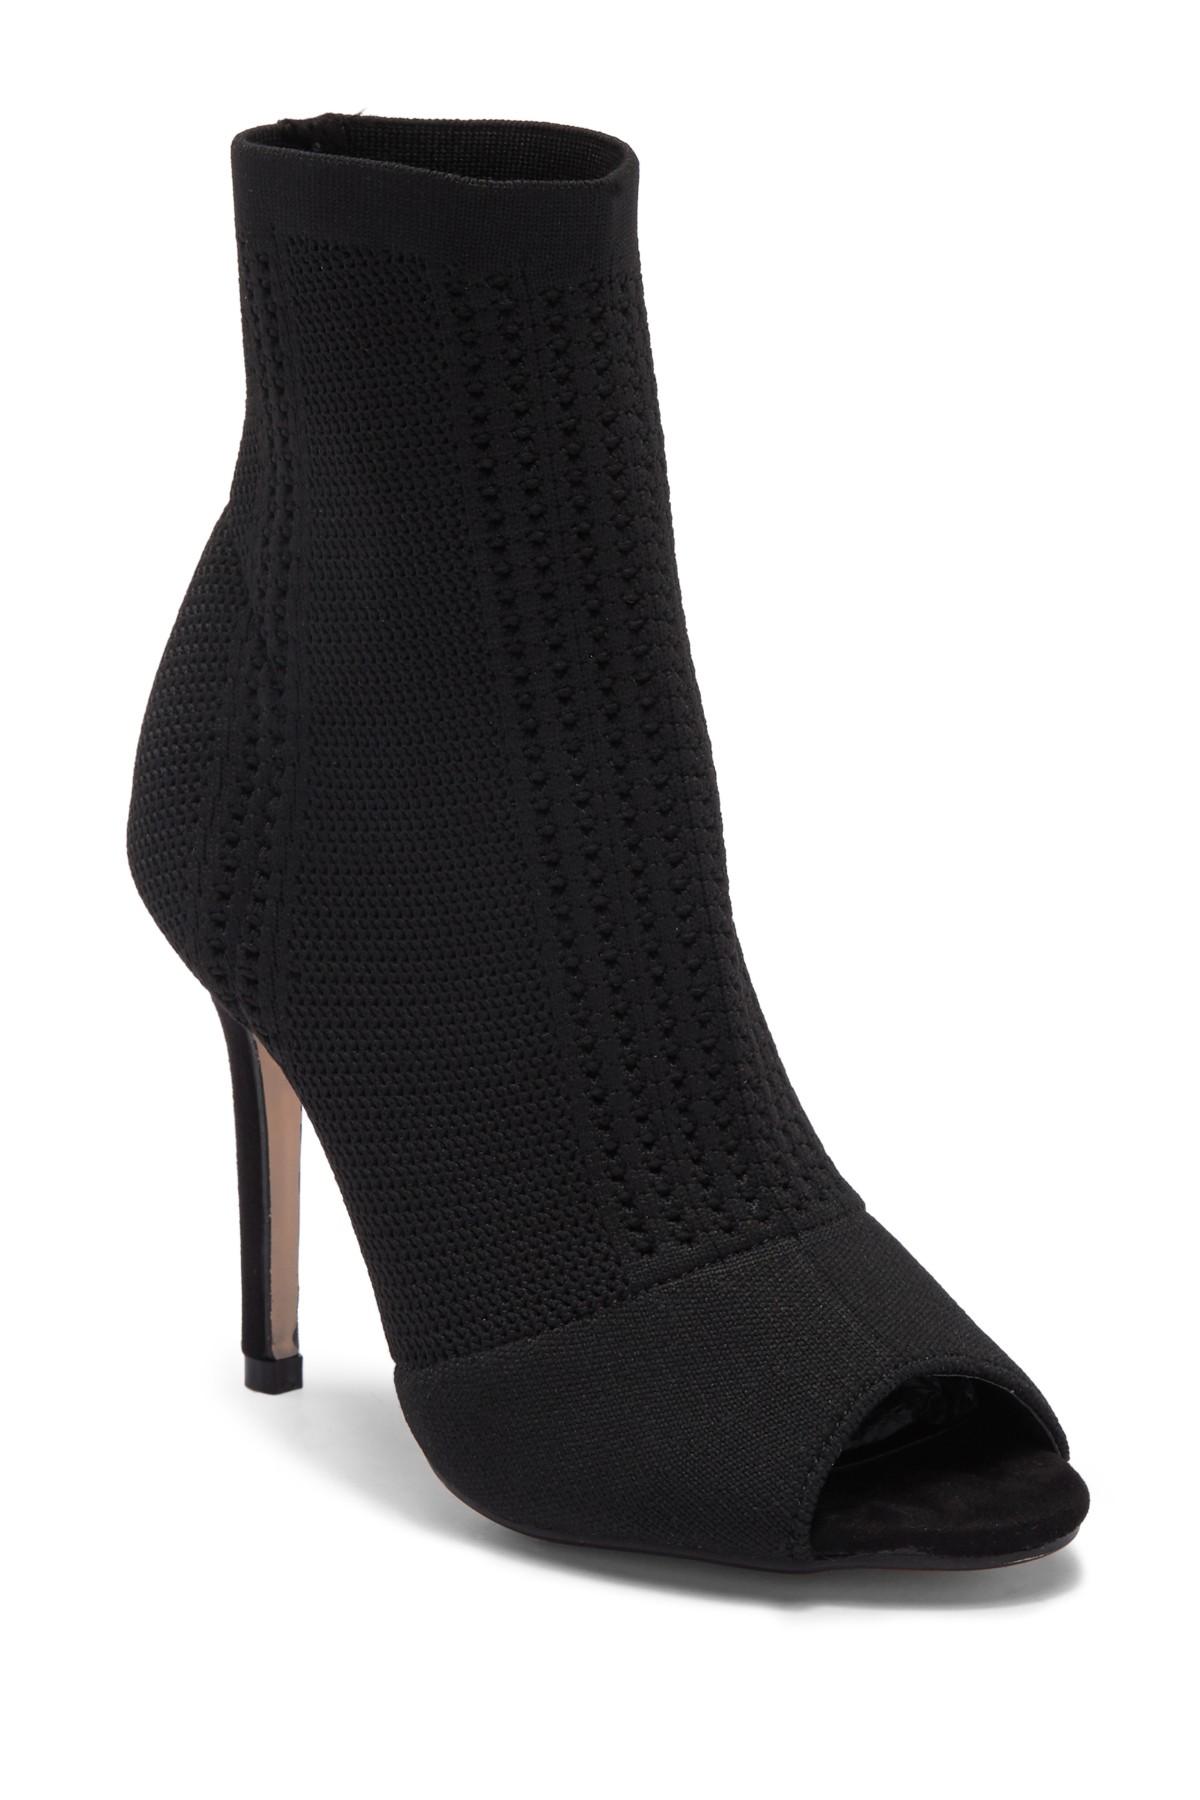 Catherine Malandrino Knitty Open Toe Stiletto Heel Knit Bootie in Black |  Lyst